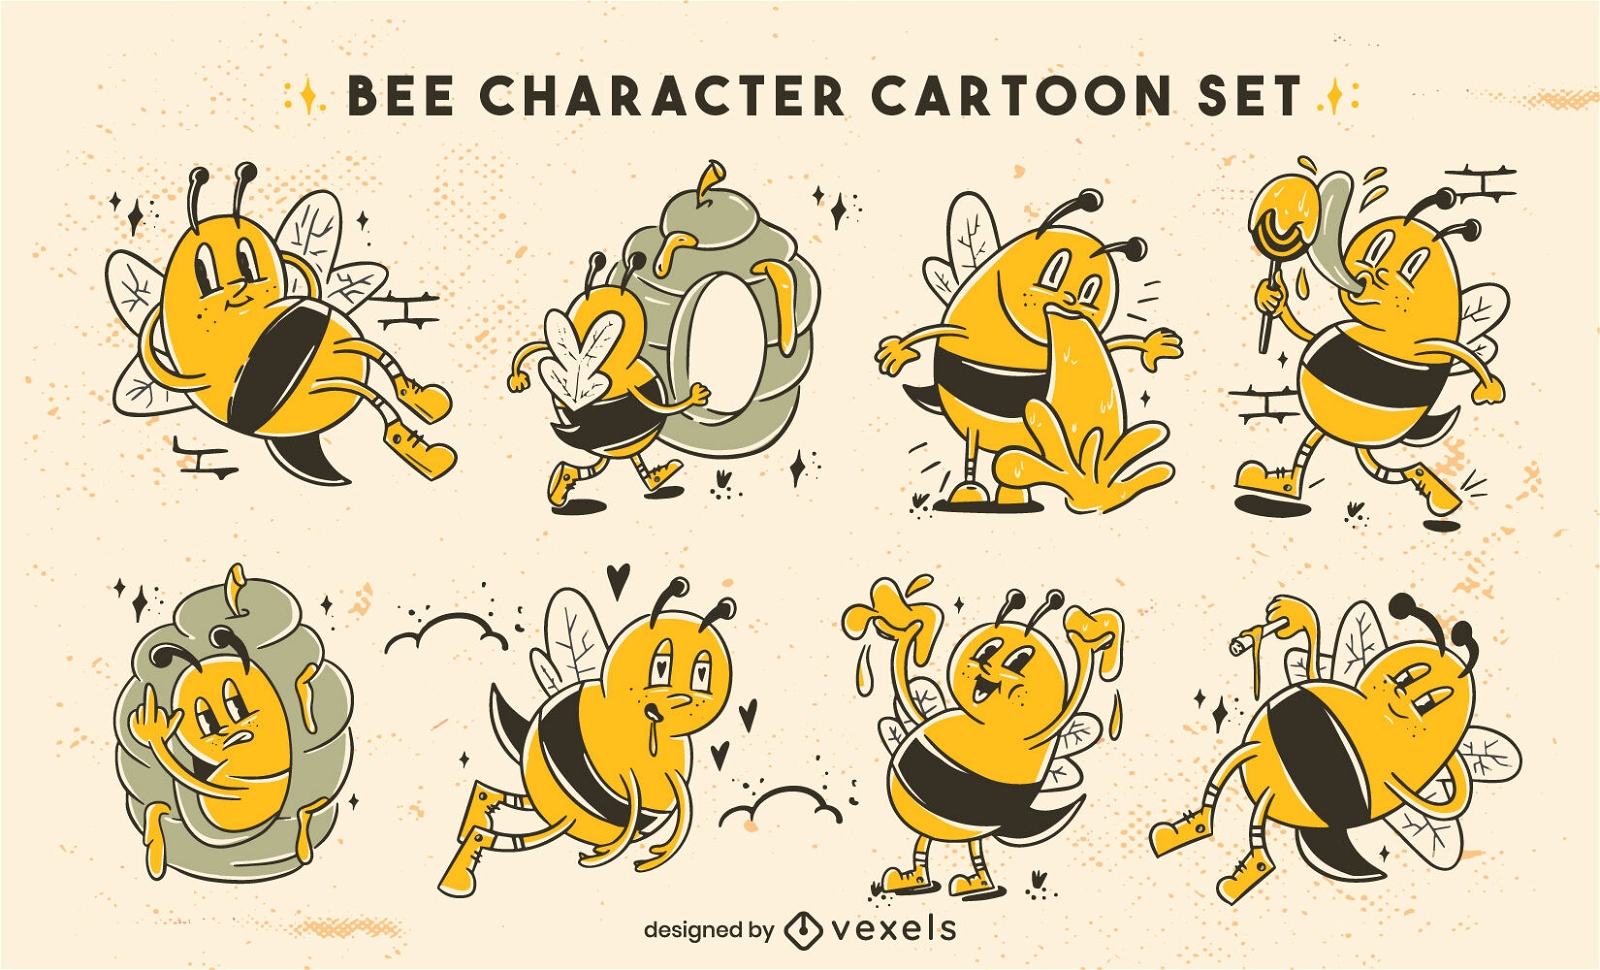 Retro cartoon bees funny character set